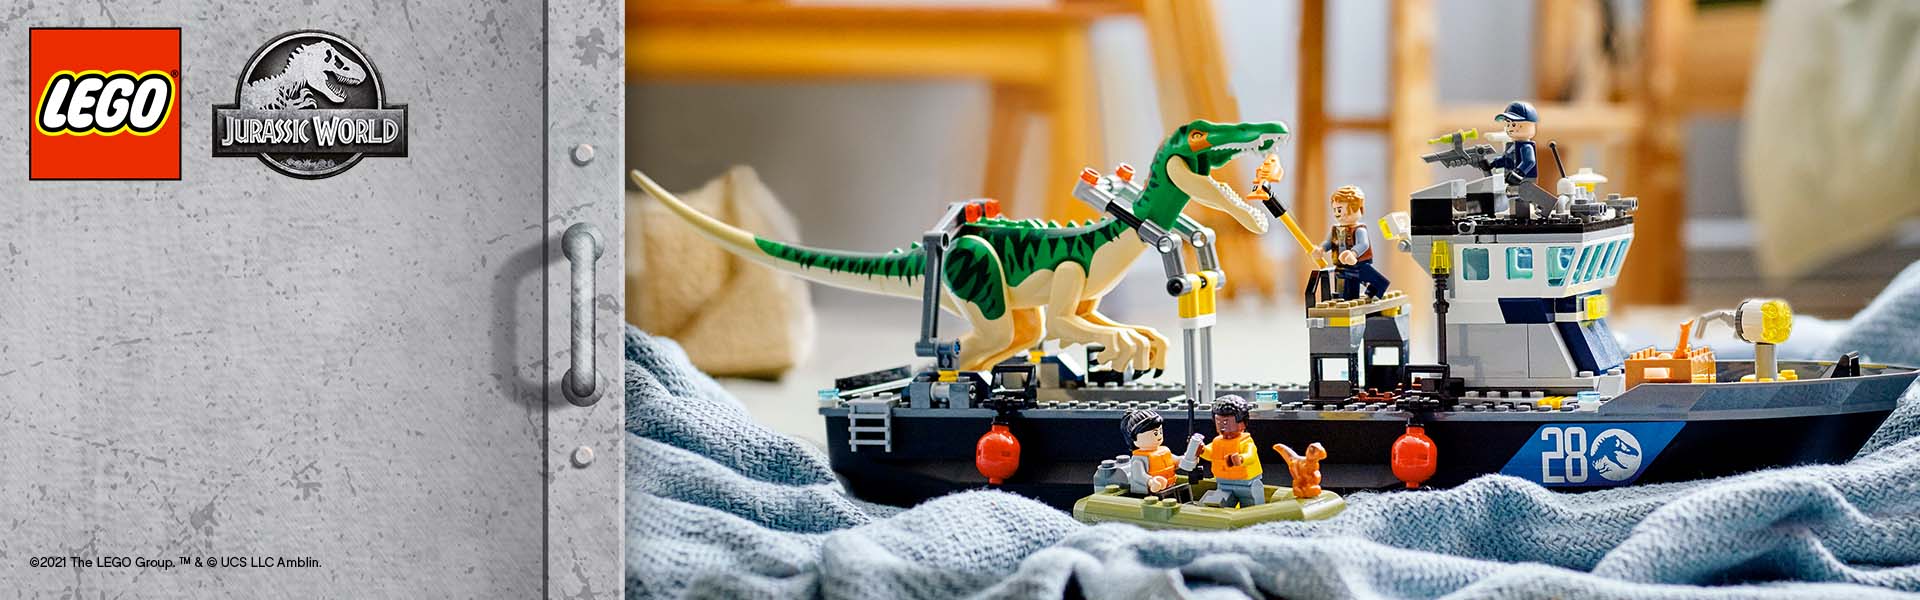 LEGO-Subbrand-header-1920x600-JurassicWorld.jpg